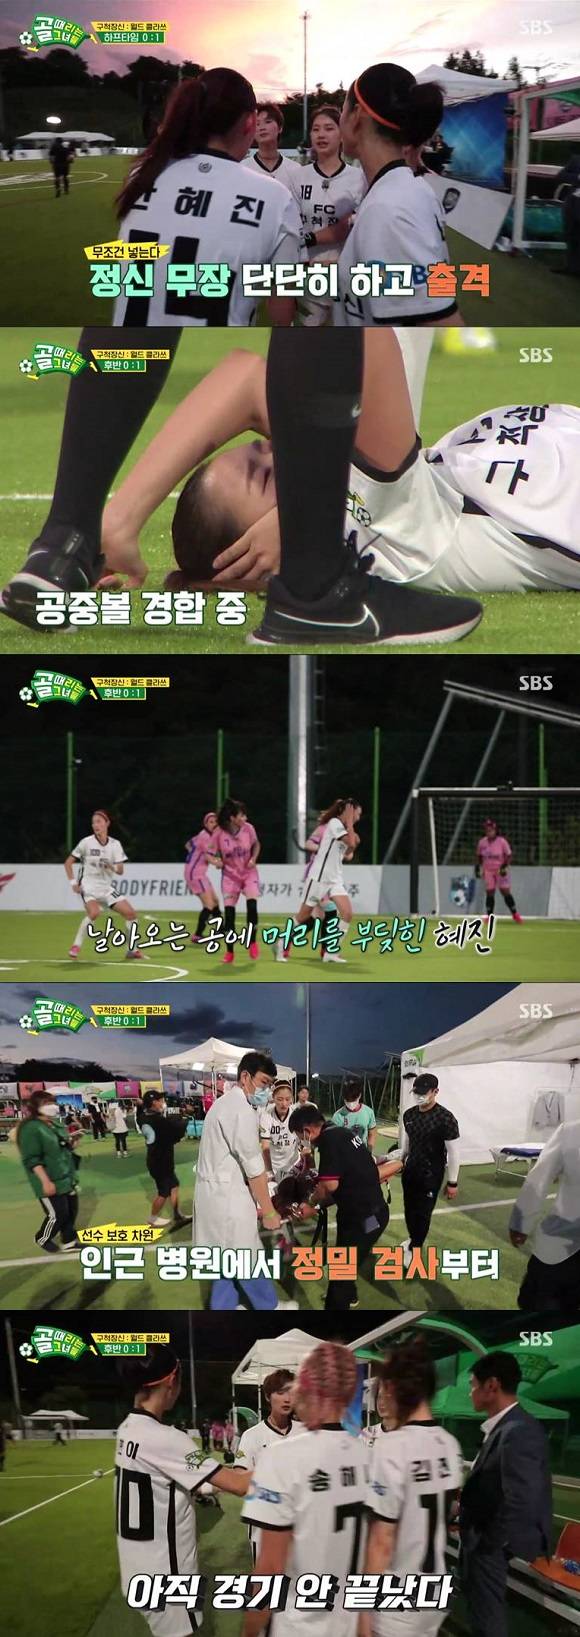 8일 방송된 SBS 골때녀 15회에서는 구척장신 팀과 월드 클라스 팀의 3, 4위전 경기가 방송됐다. /SBS 제공